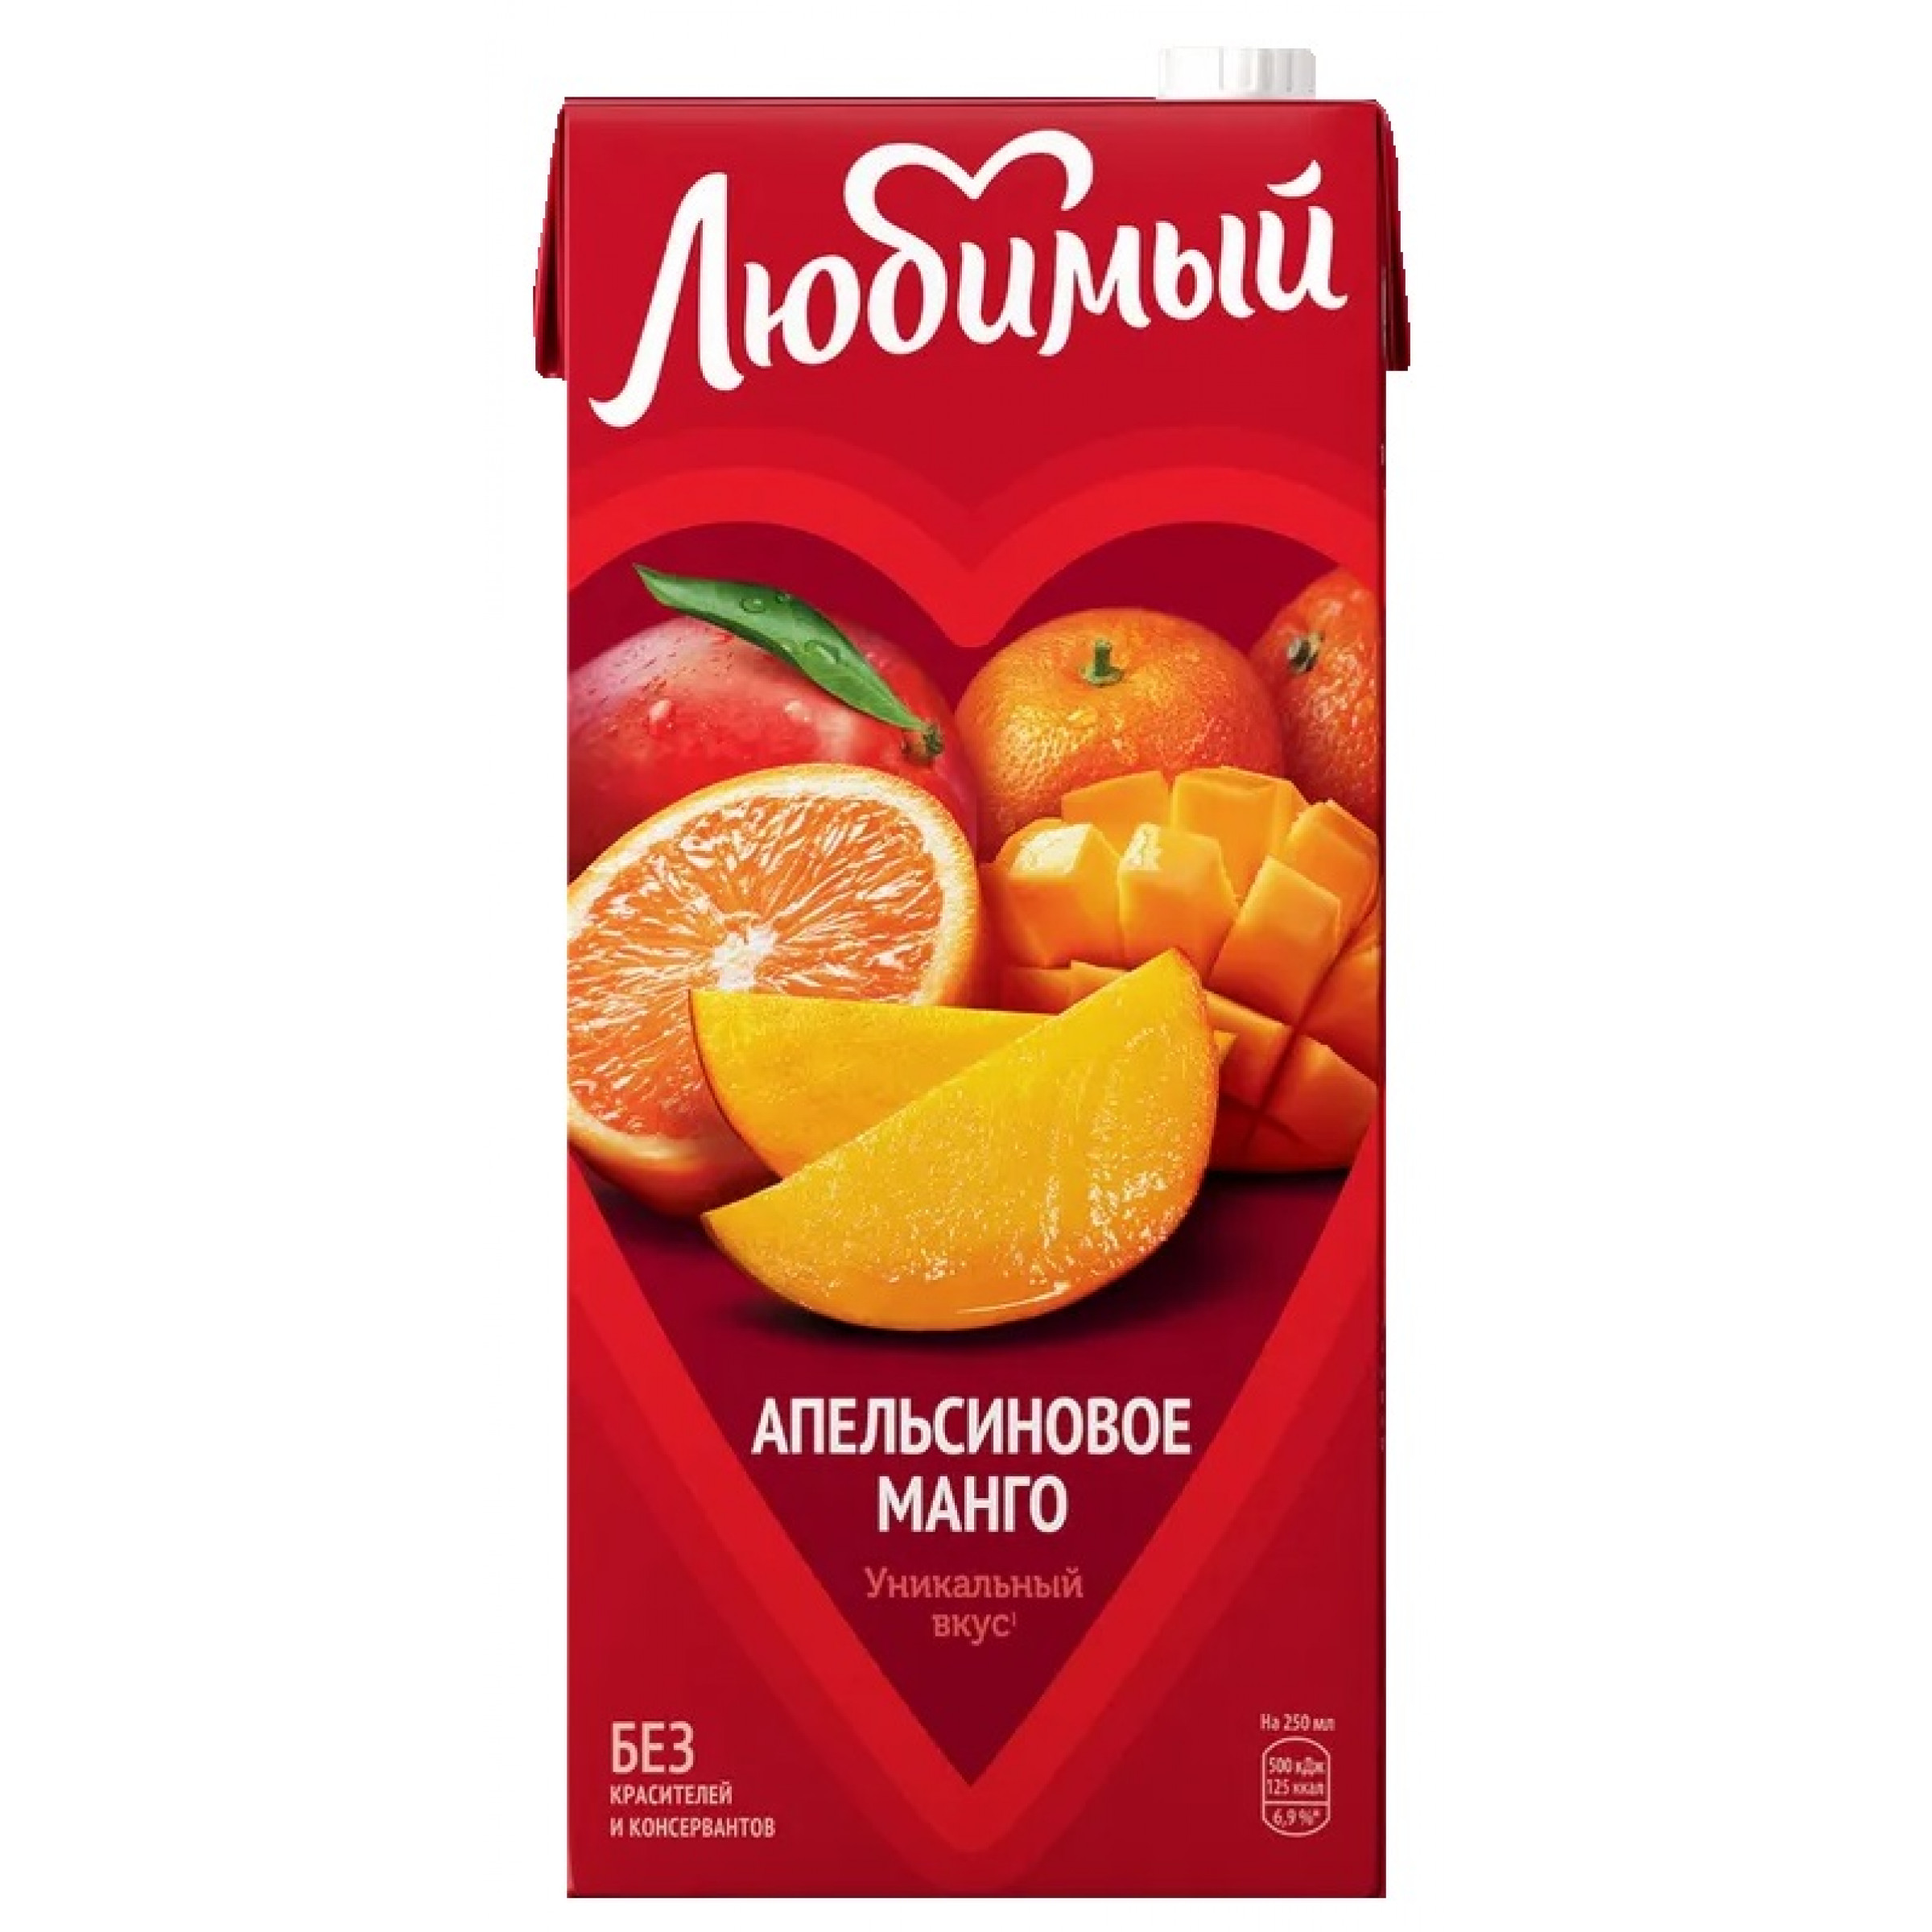 Нектар Любимый апельсиновое манго, 1,93л